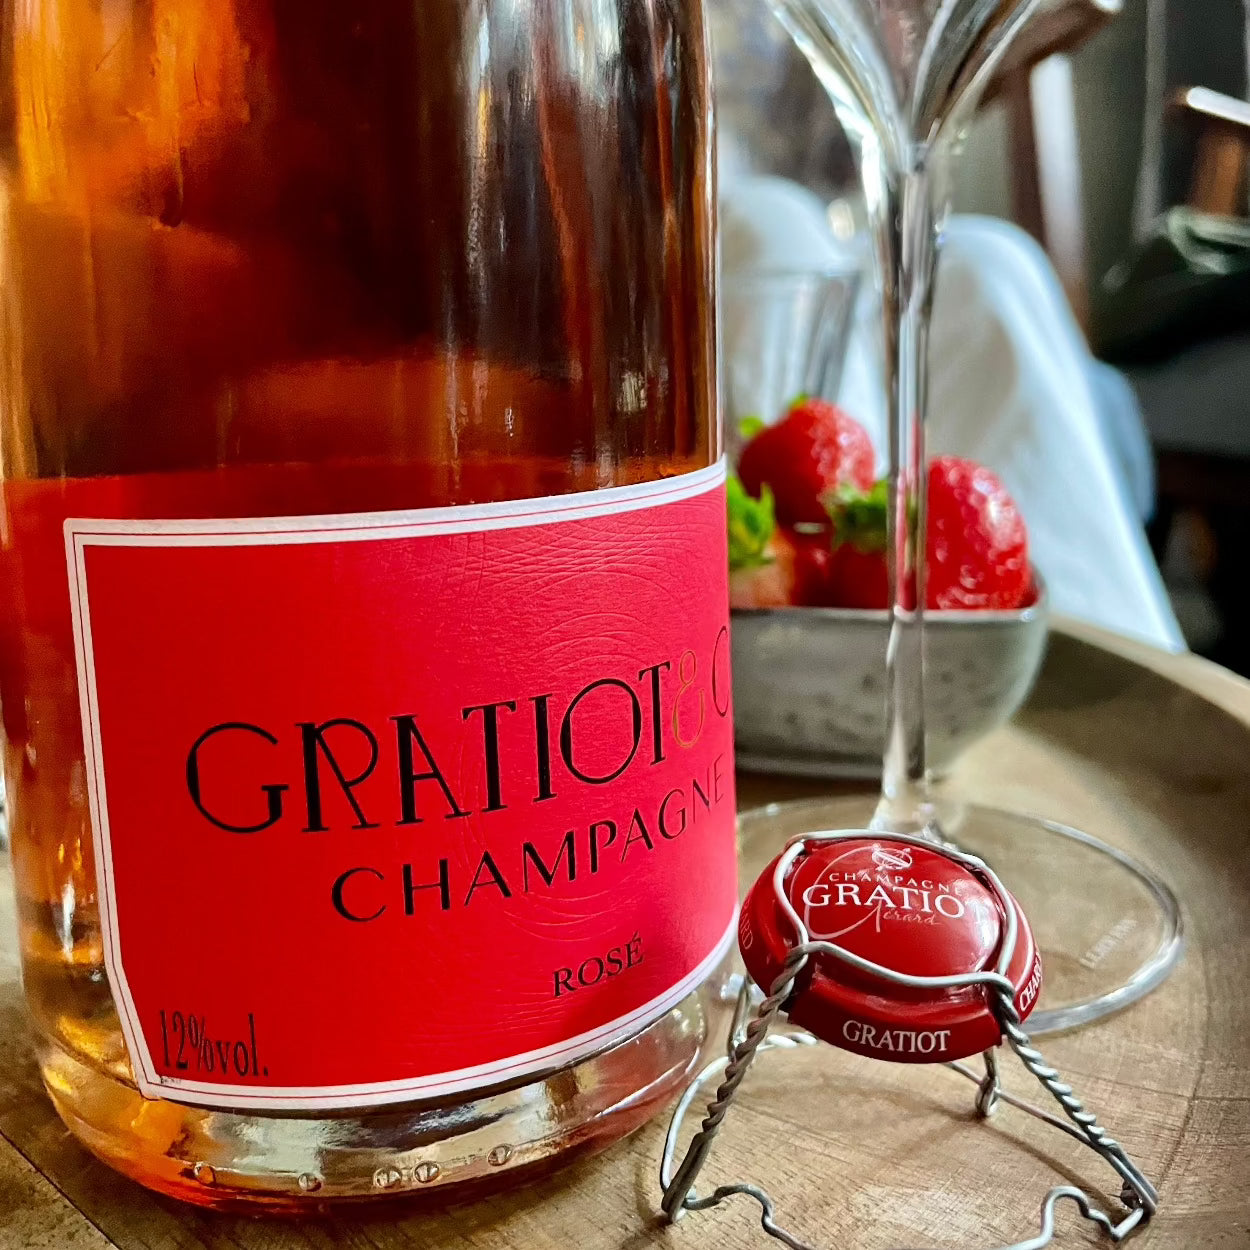 tæt på champagne flaske med rosé champagne, rød etikette, champagne fra Gratiot & Cie, Rosé, muslet og kapsel ved siden af flasken, glas, jordbær i baggrunden